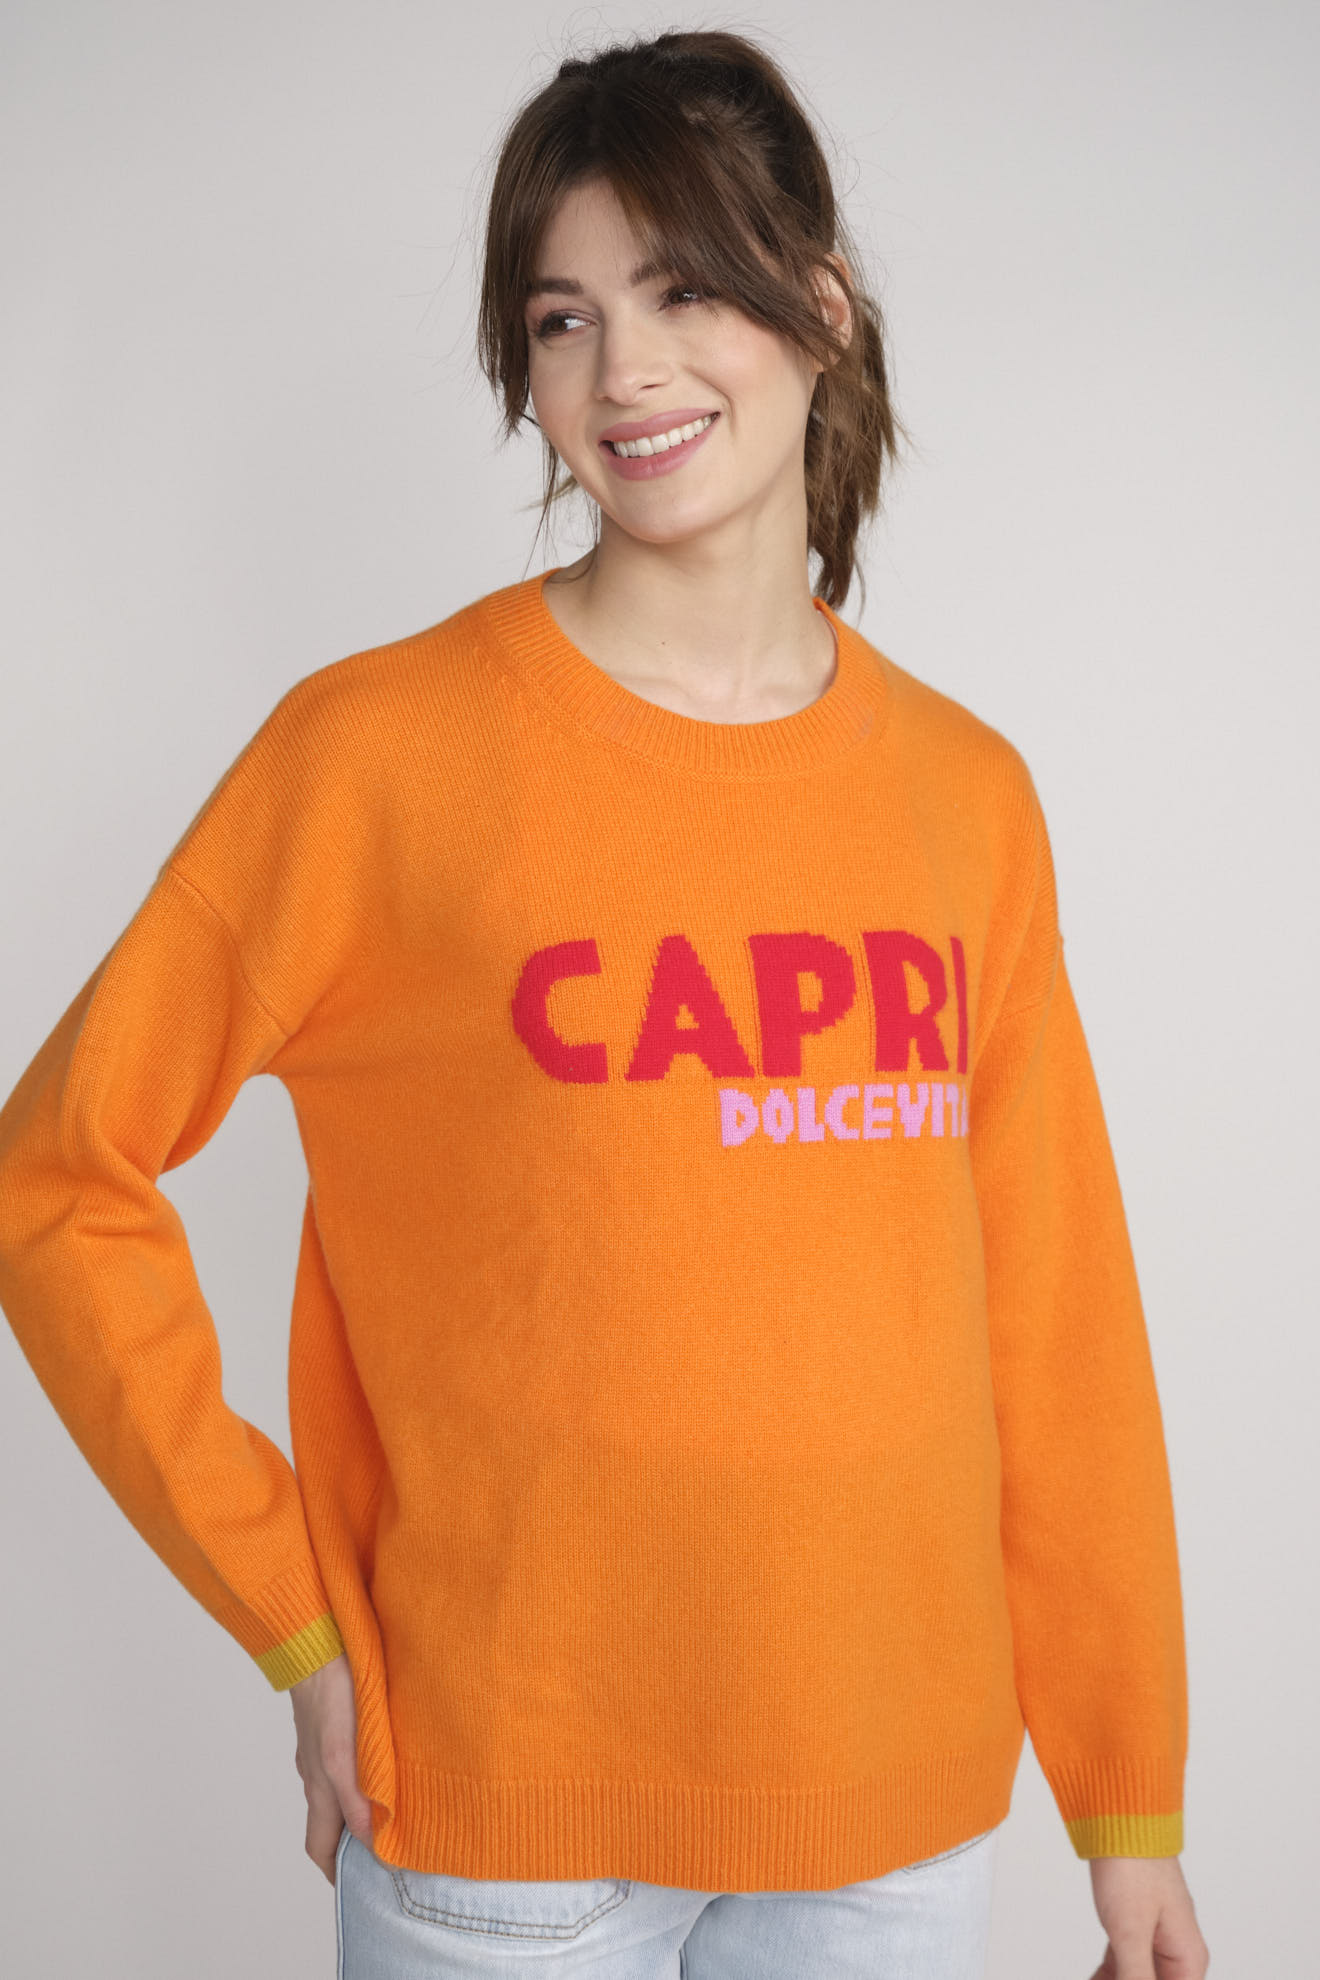 Catrin Schanz Capri – Langarmpullover aus Cashmere mit Print orange M